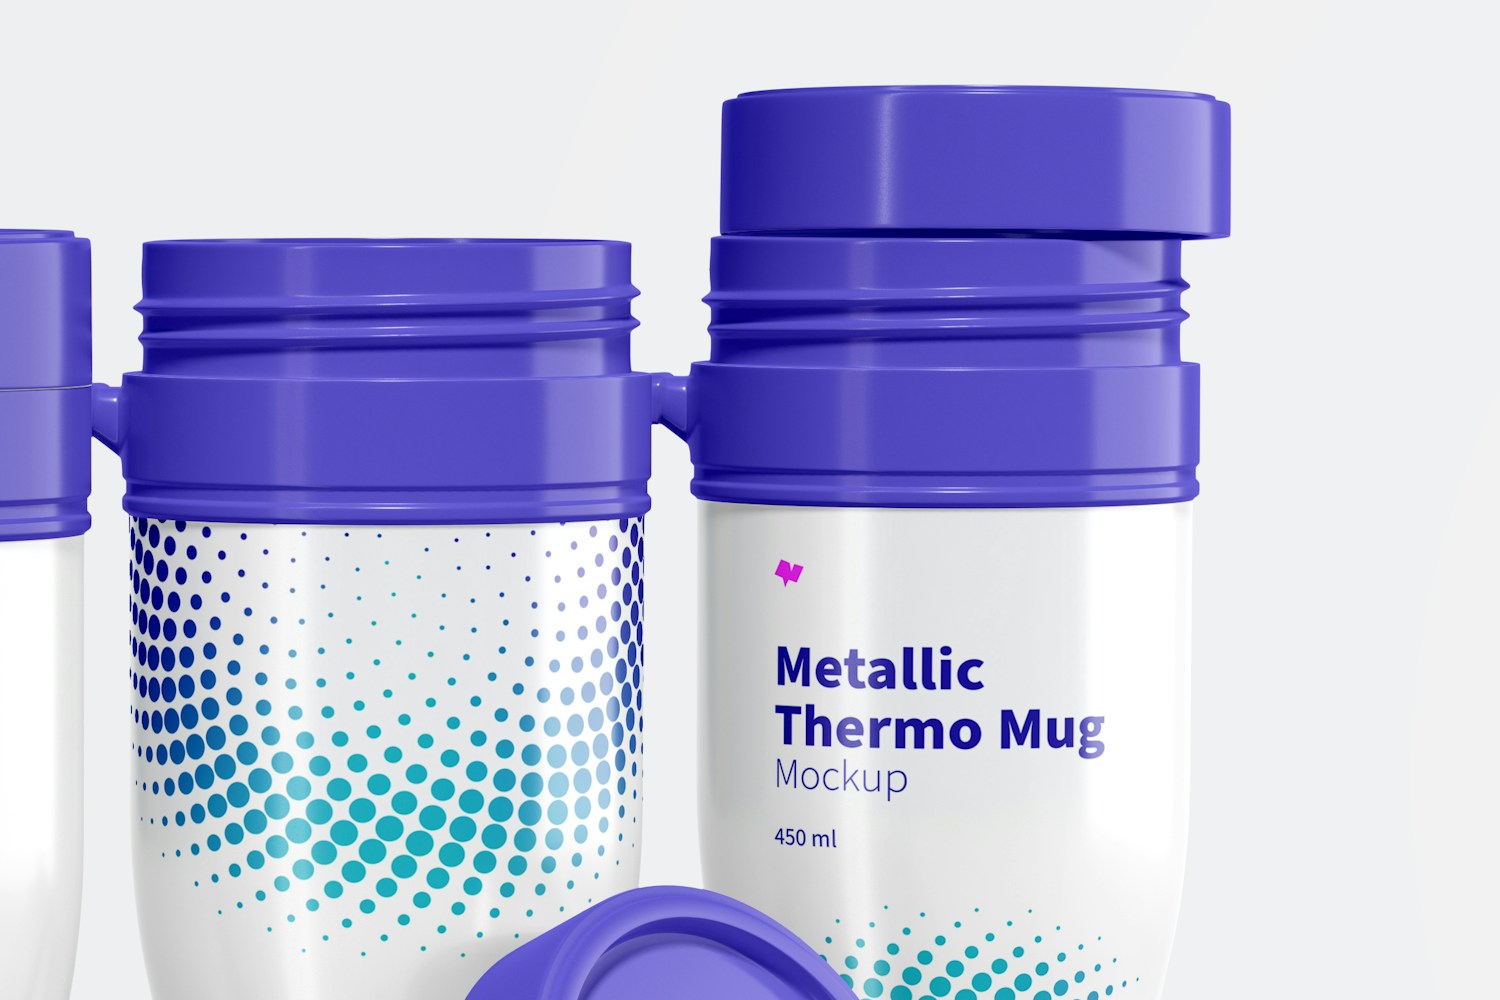 Glossy Metallic Thermo Mug Set Mockup